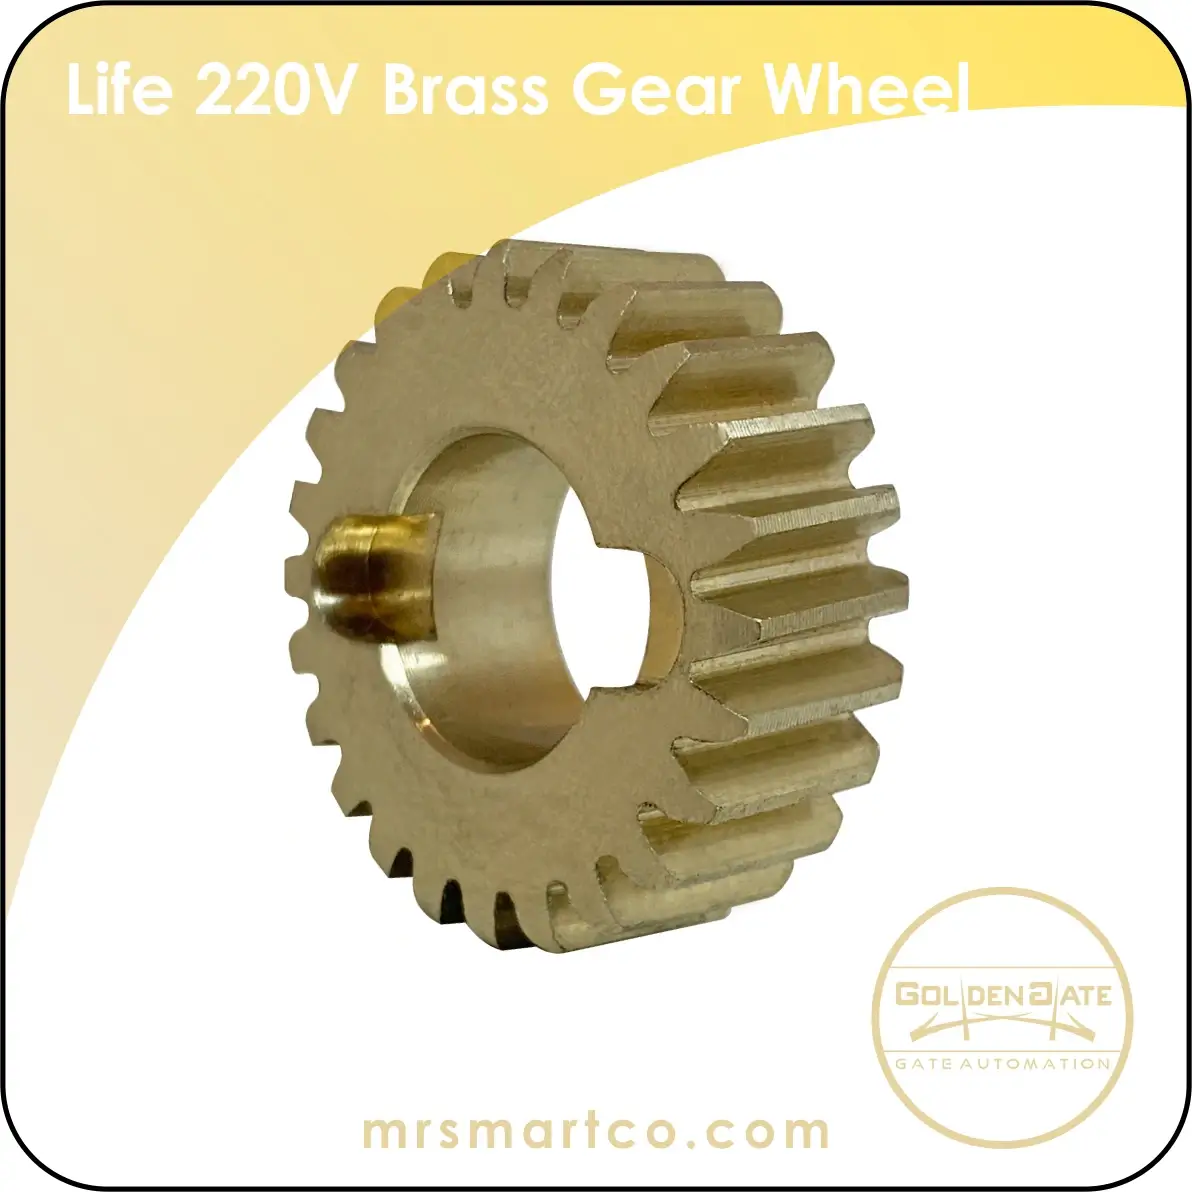 Life 220V brass gear wheel